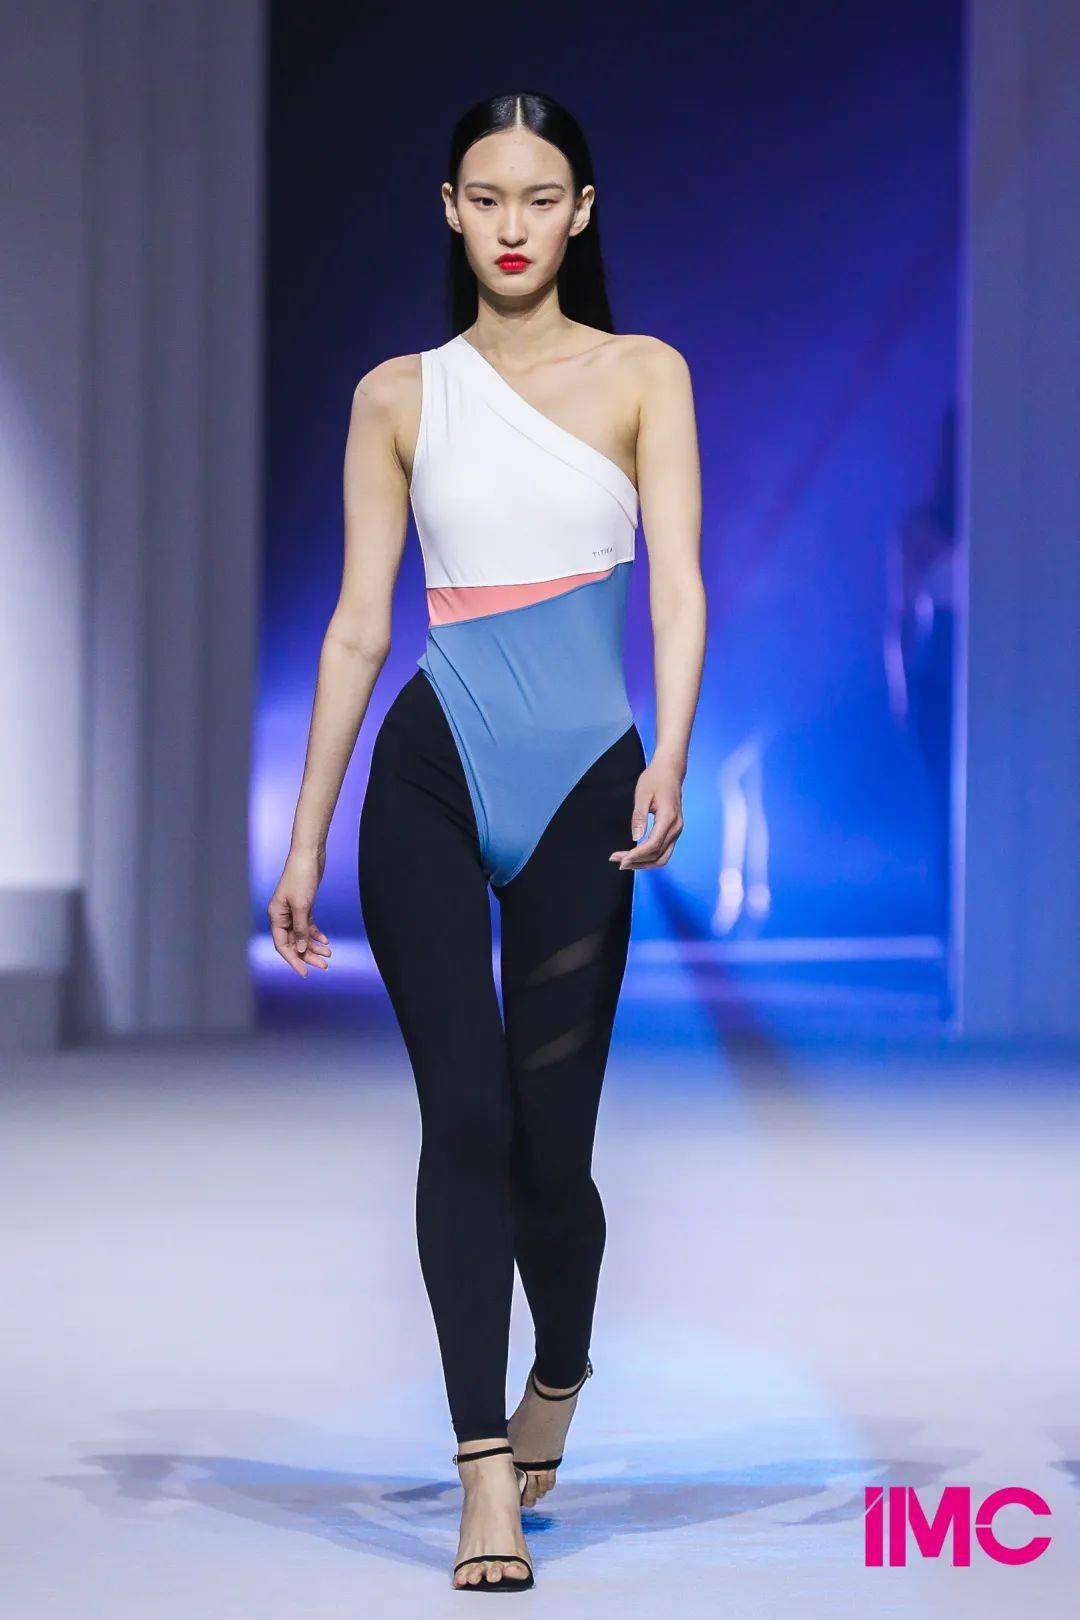 event丨2020imc上海国际模特大赛圆满落幕,次世代潮模